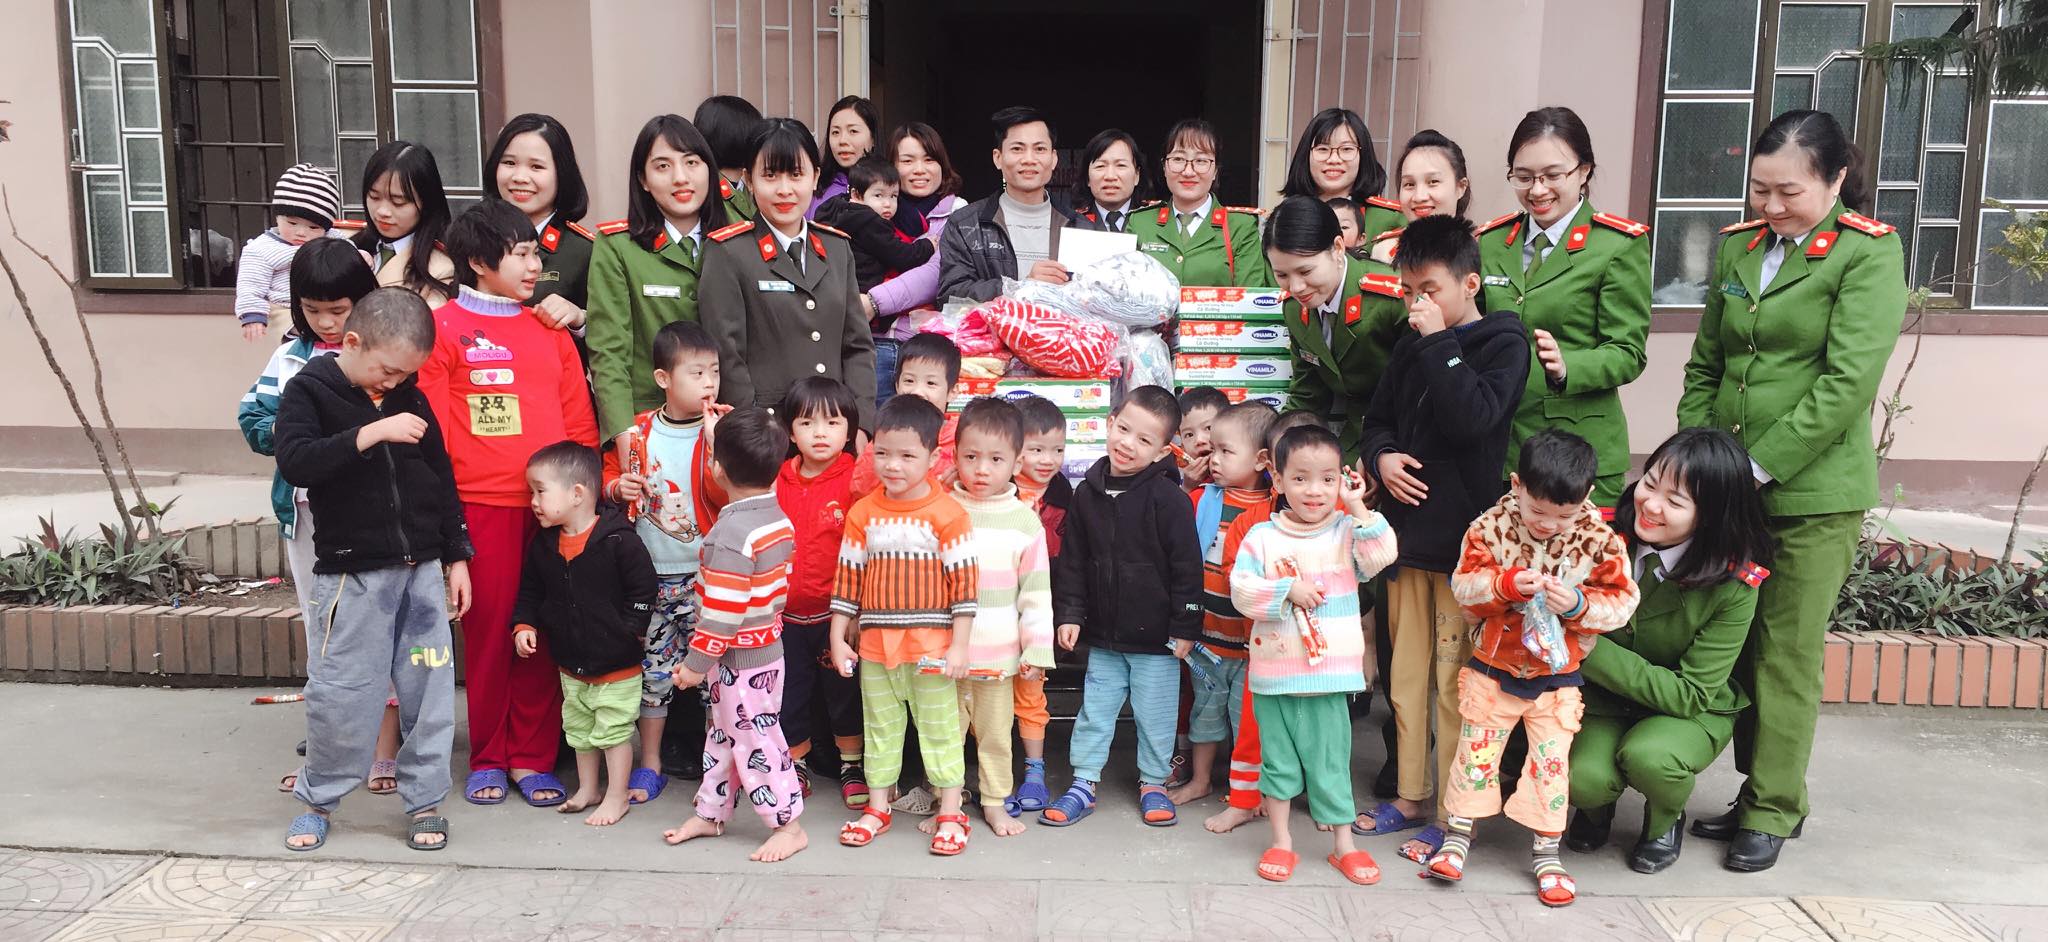 Đoàn thanh niên, Hội phụ nữ Công an huyện Quỳnh Lưu tặng quà cho các em nhỏ tại trung tâm công tác xã hội